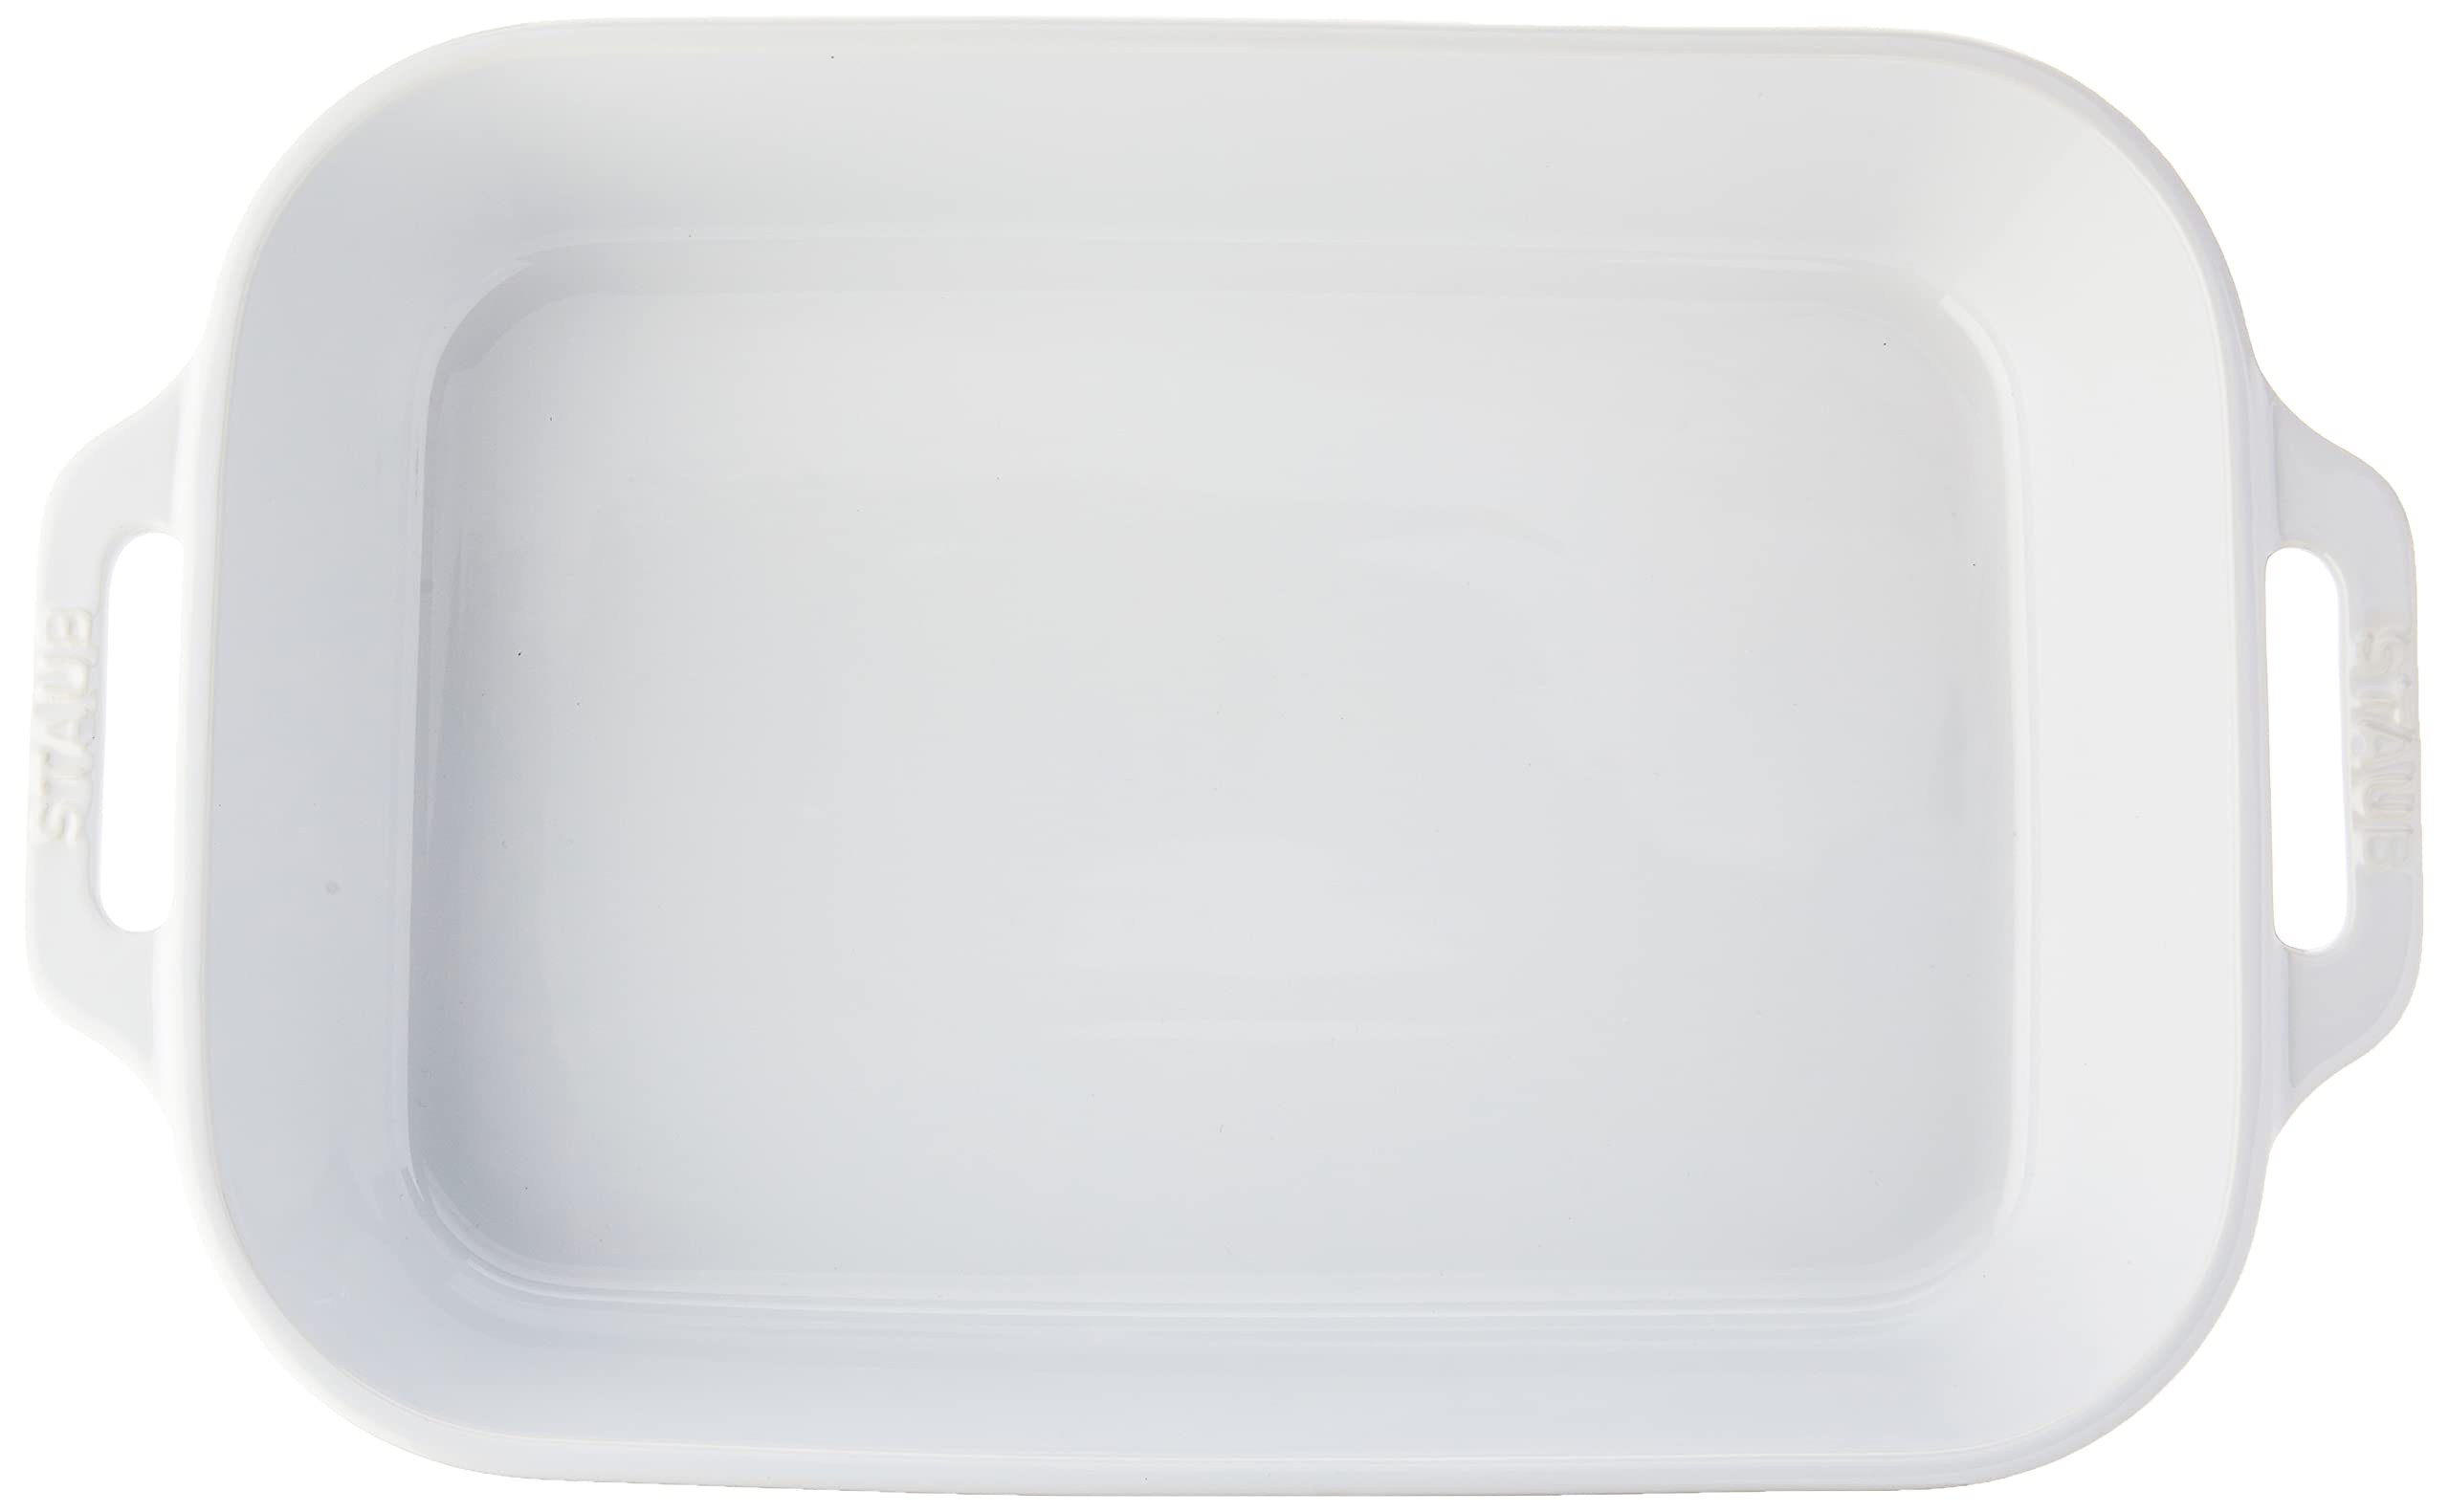 STAUB - 40508-597 STAUB Ceramics Rectangular Baking Dish, 13x9-inch, White